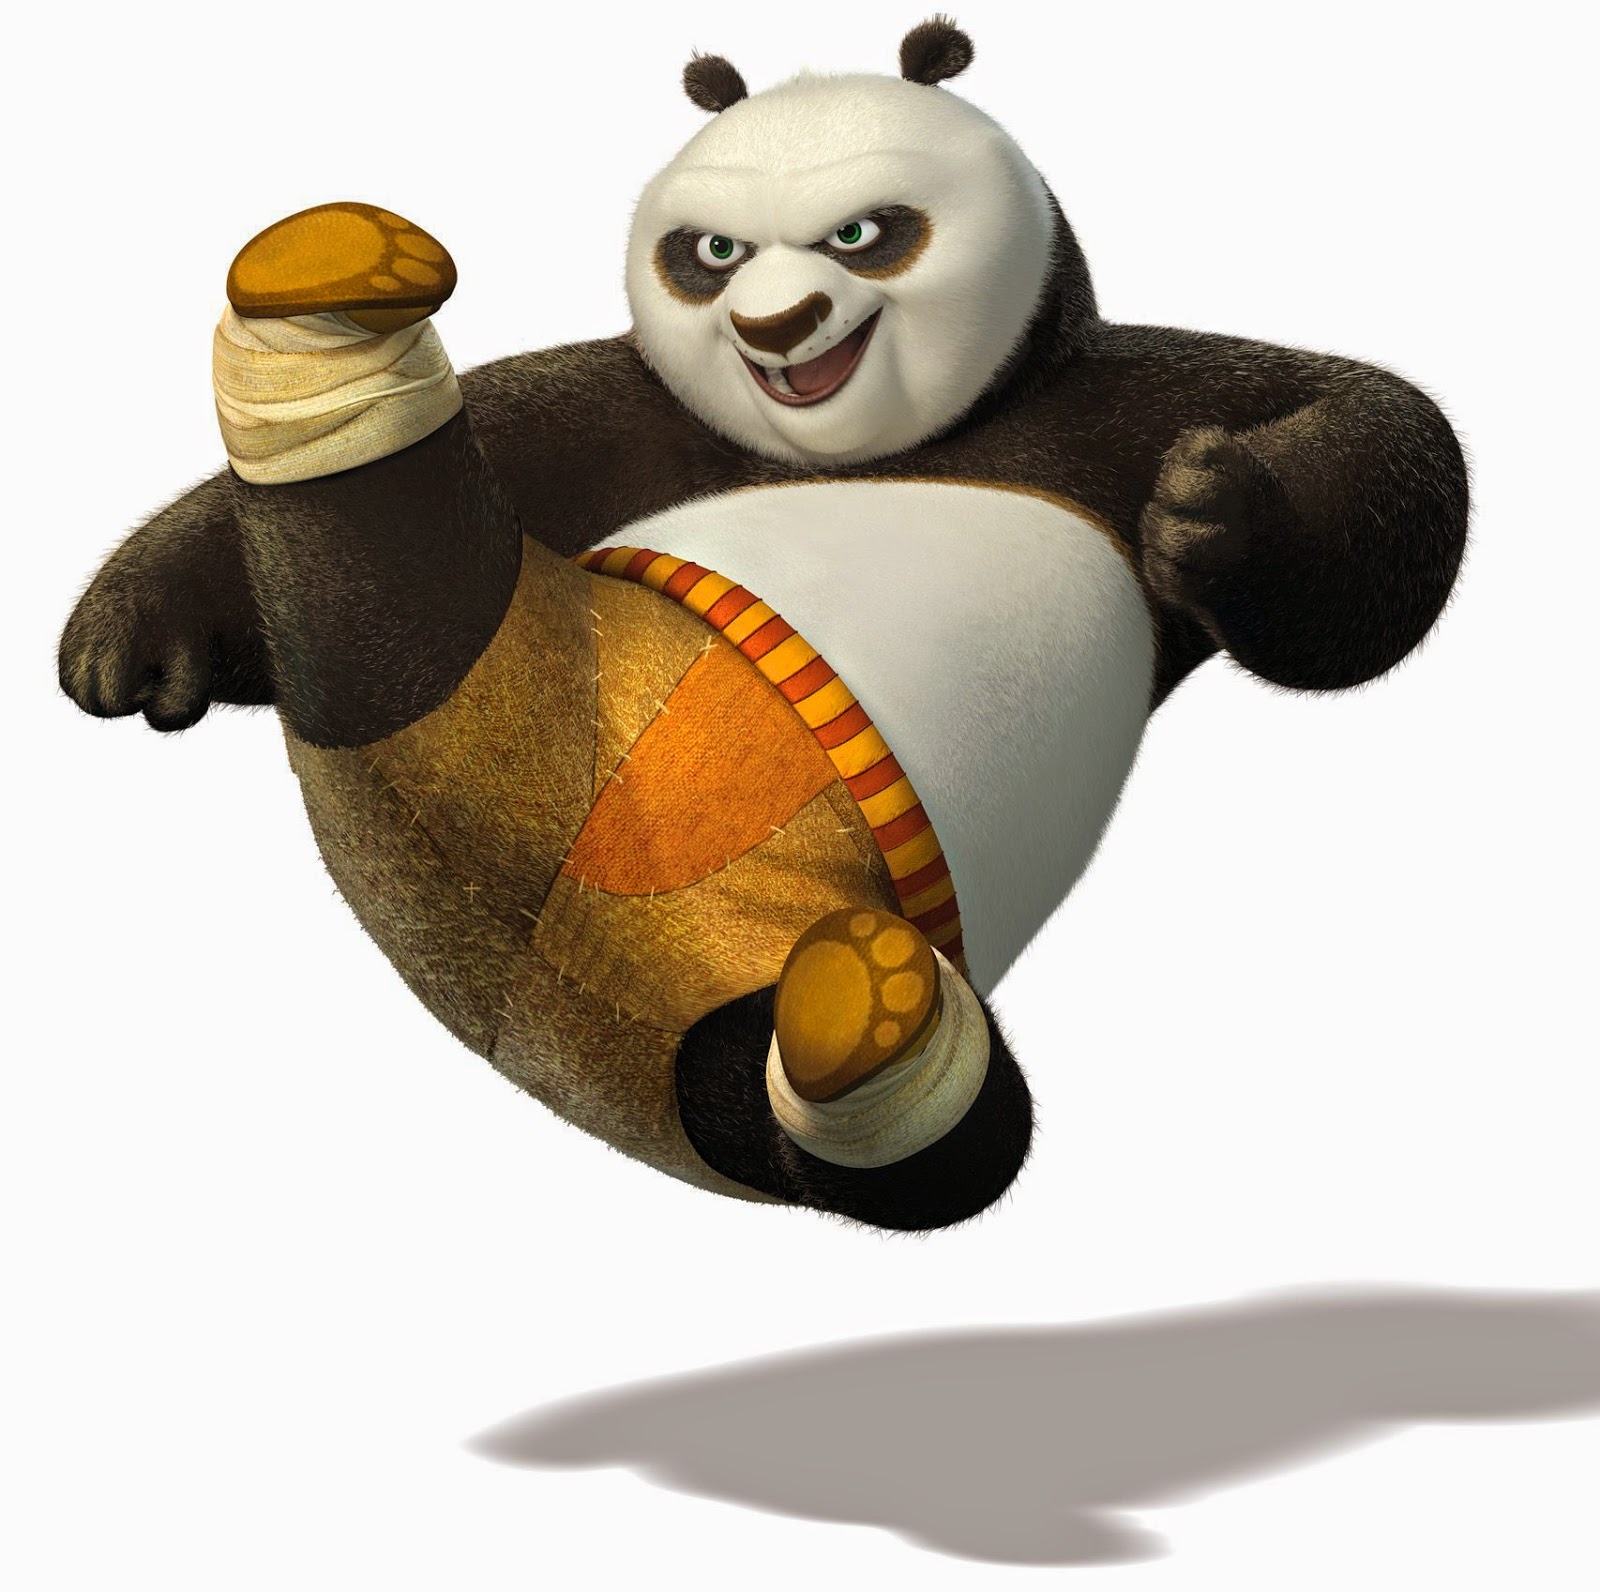 Kumpulan Gambar Kung Fu Panda Gambar Lucu Terbaru Cartoon